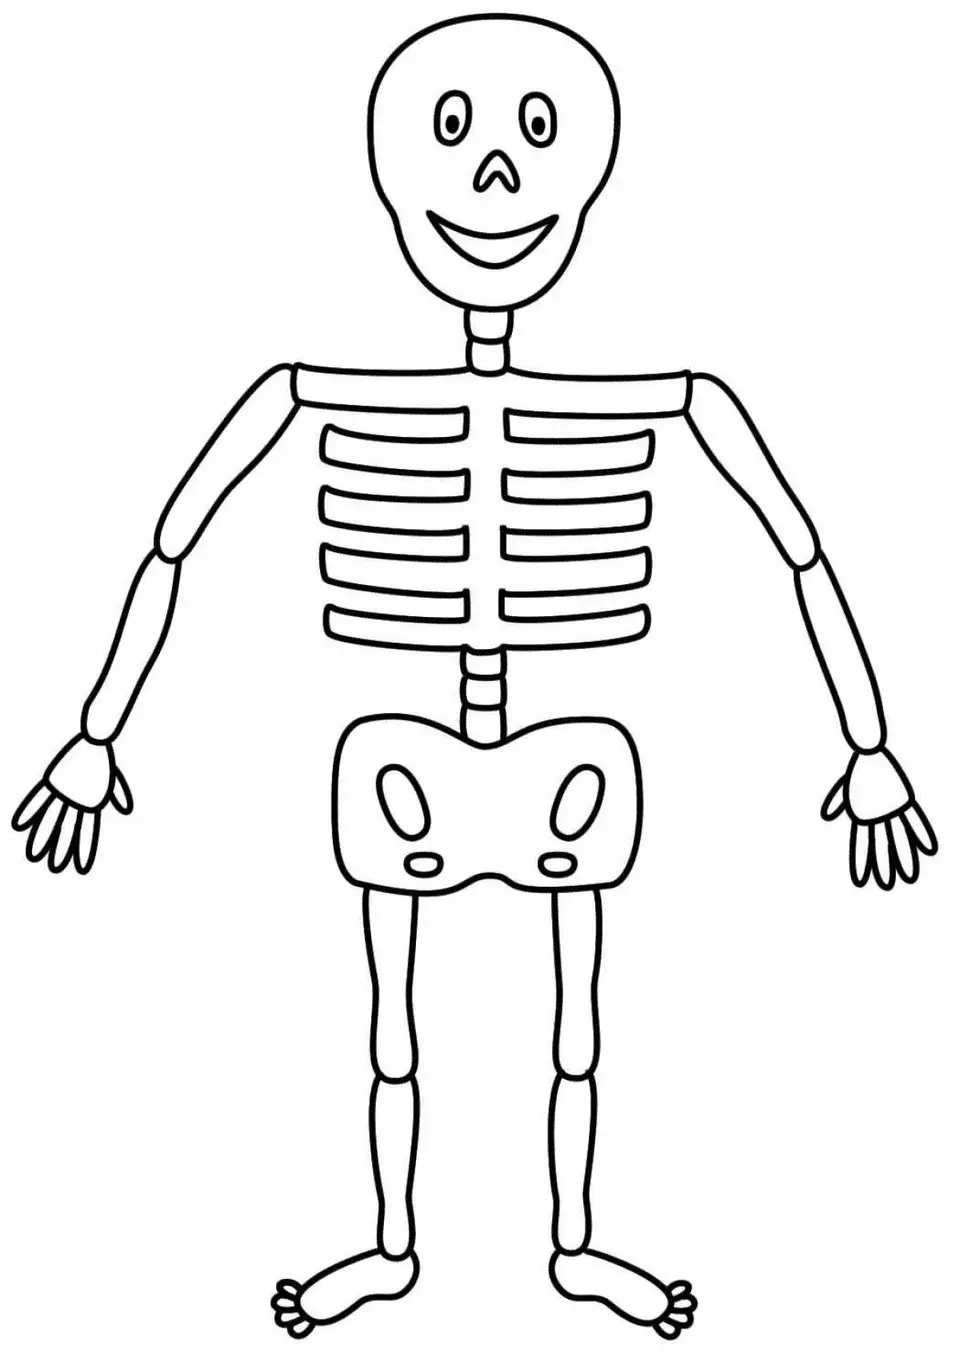 Скелет для рисования